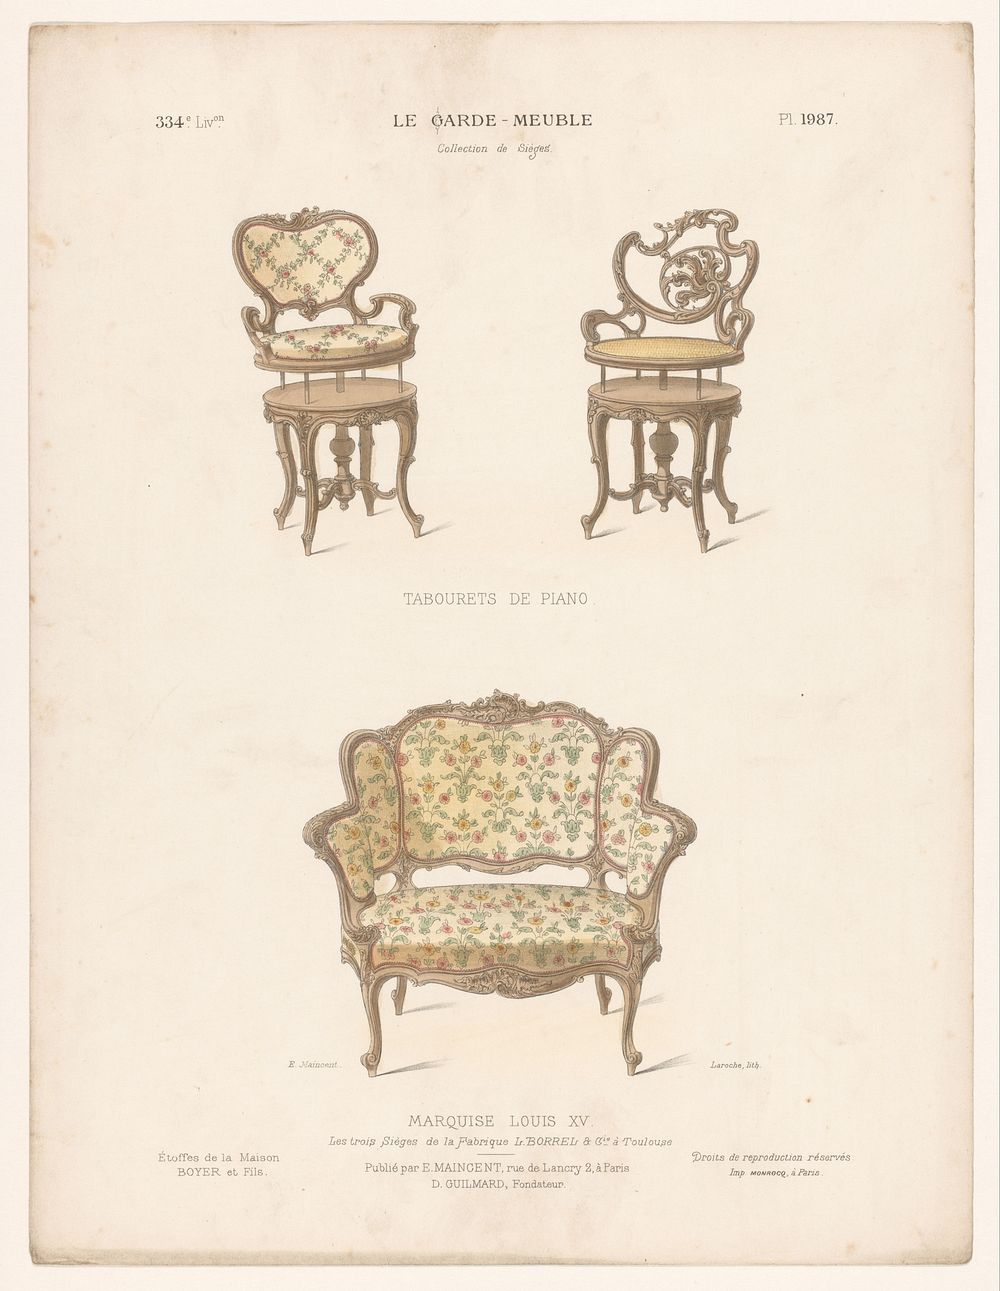 Tabourets en stoel (1885 - 1895) by Léon Laroche, Monrocq, Eugène Maincent and Désiré Guilmard